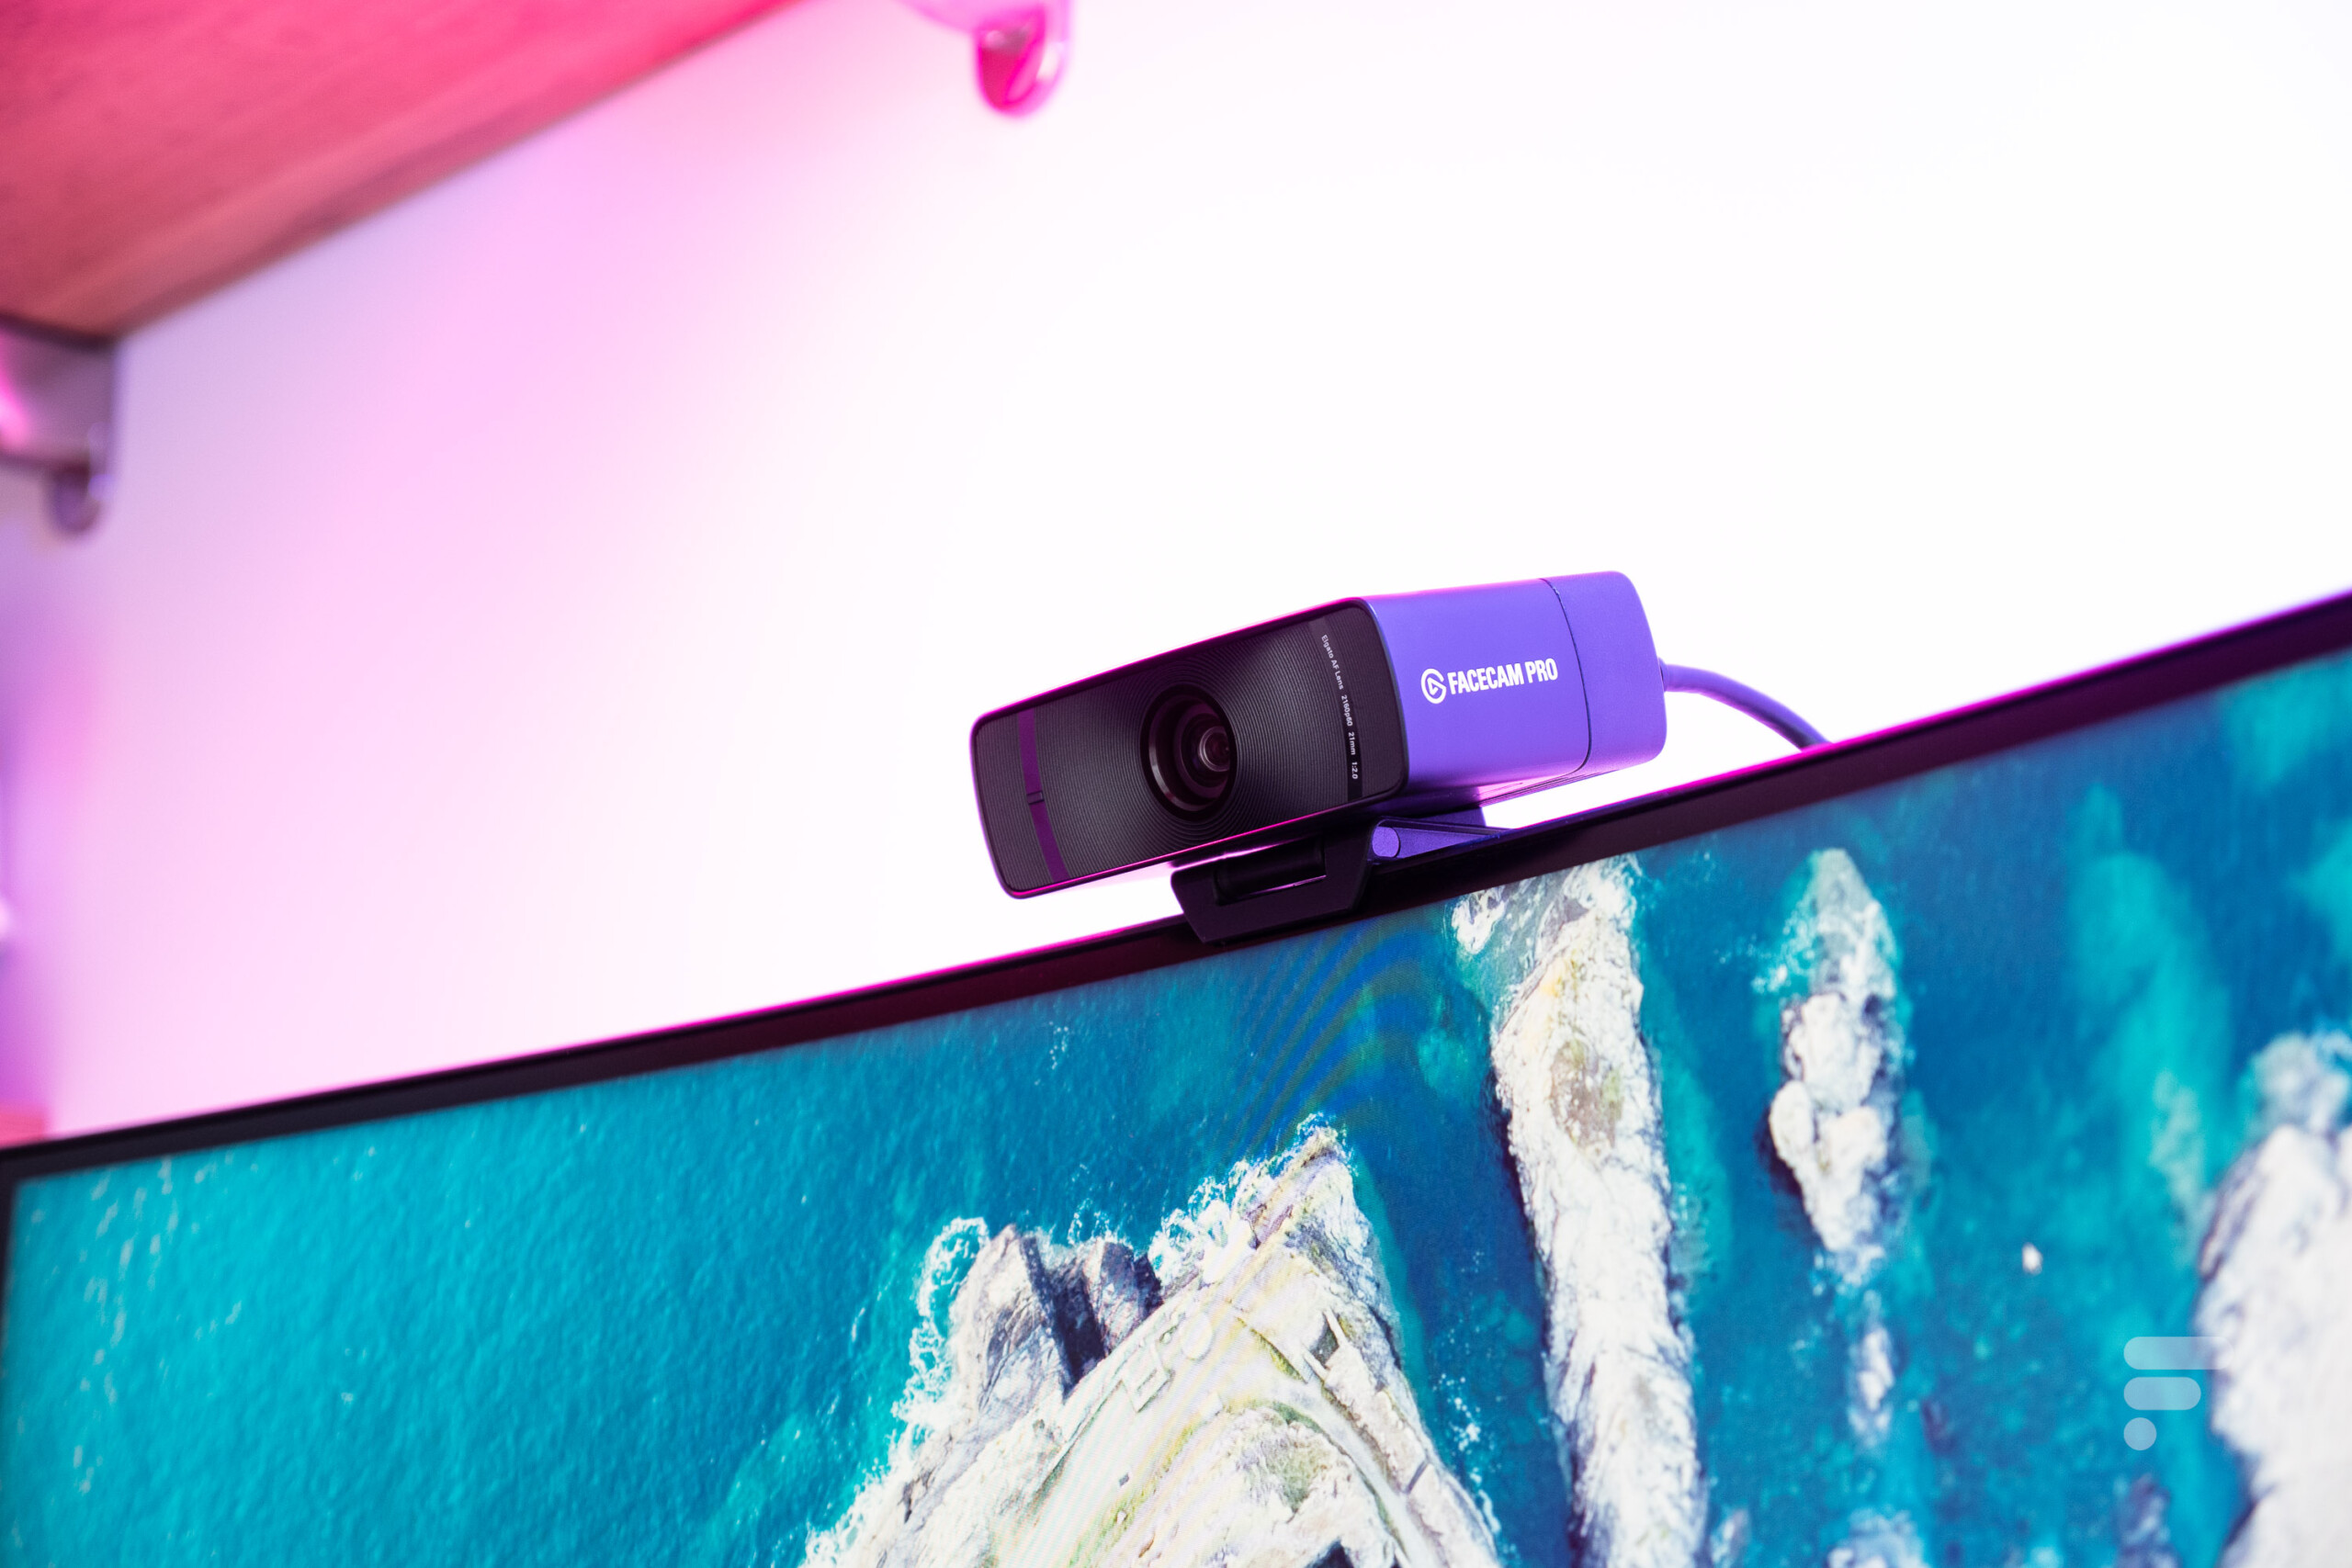 Les meilleures webcams pour le streaming en 2022 - ZDNet